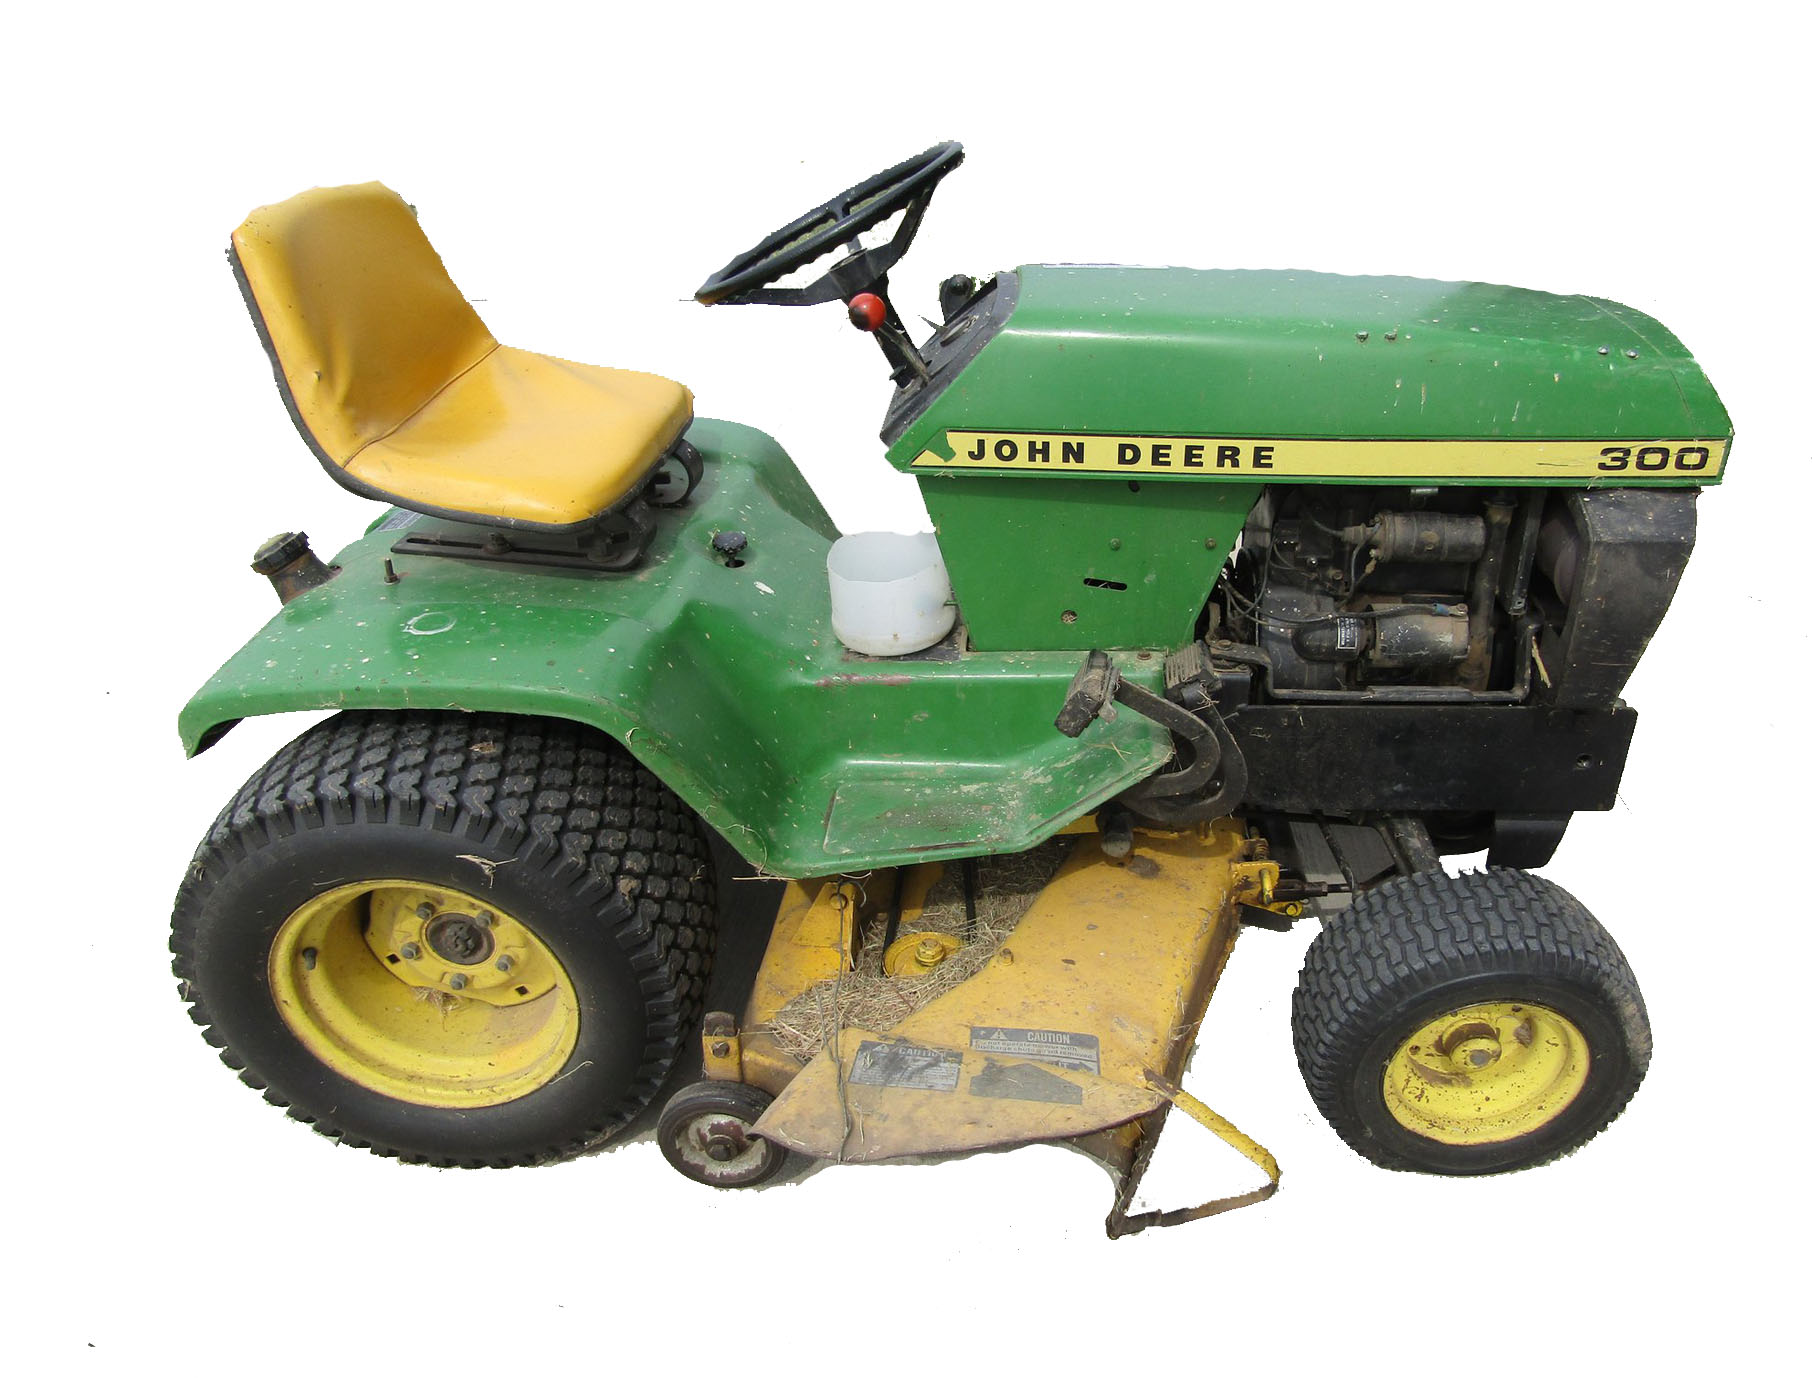 John Deere 300 Garden Tractor Price Specs